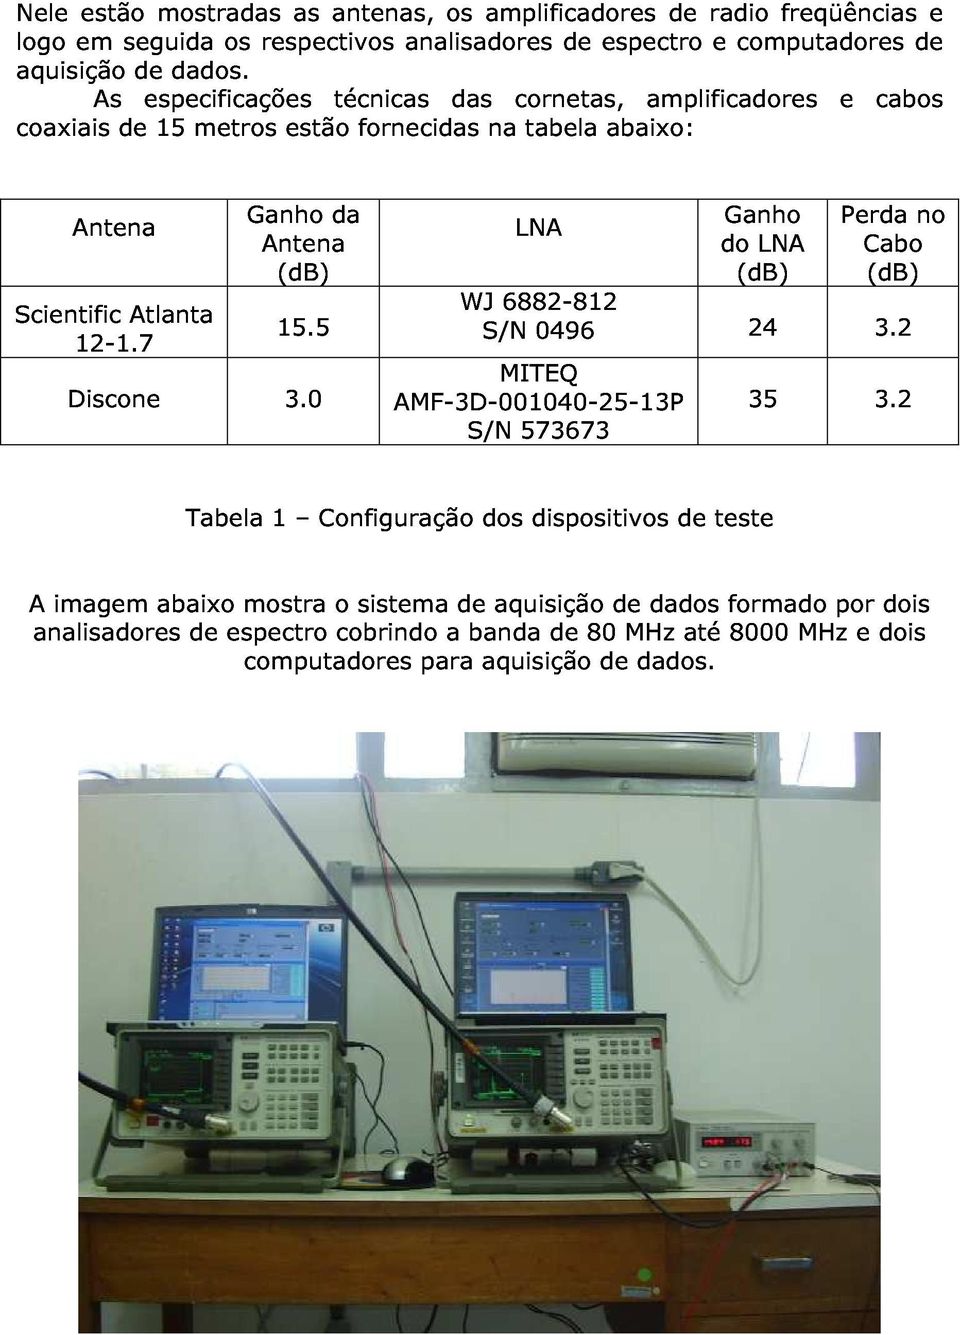 Antena de 15 metros Ganho estão da fornecidas na tabela abaixo: Scientific Atlanta Antena (db) LNA do Ganho (db) LNA Perda Cabo (db) no Discone 12-1.7 15.5 3.